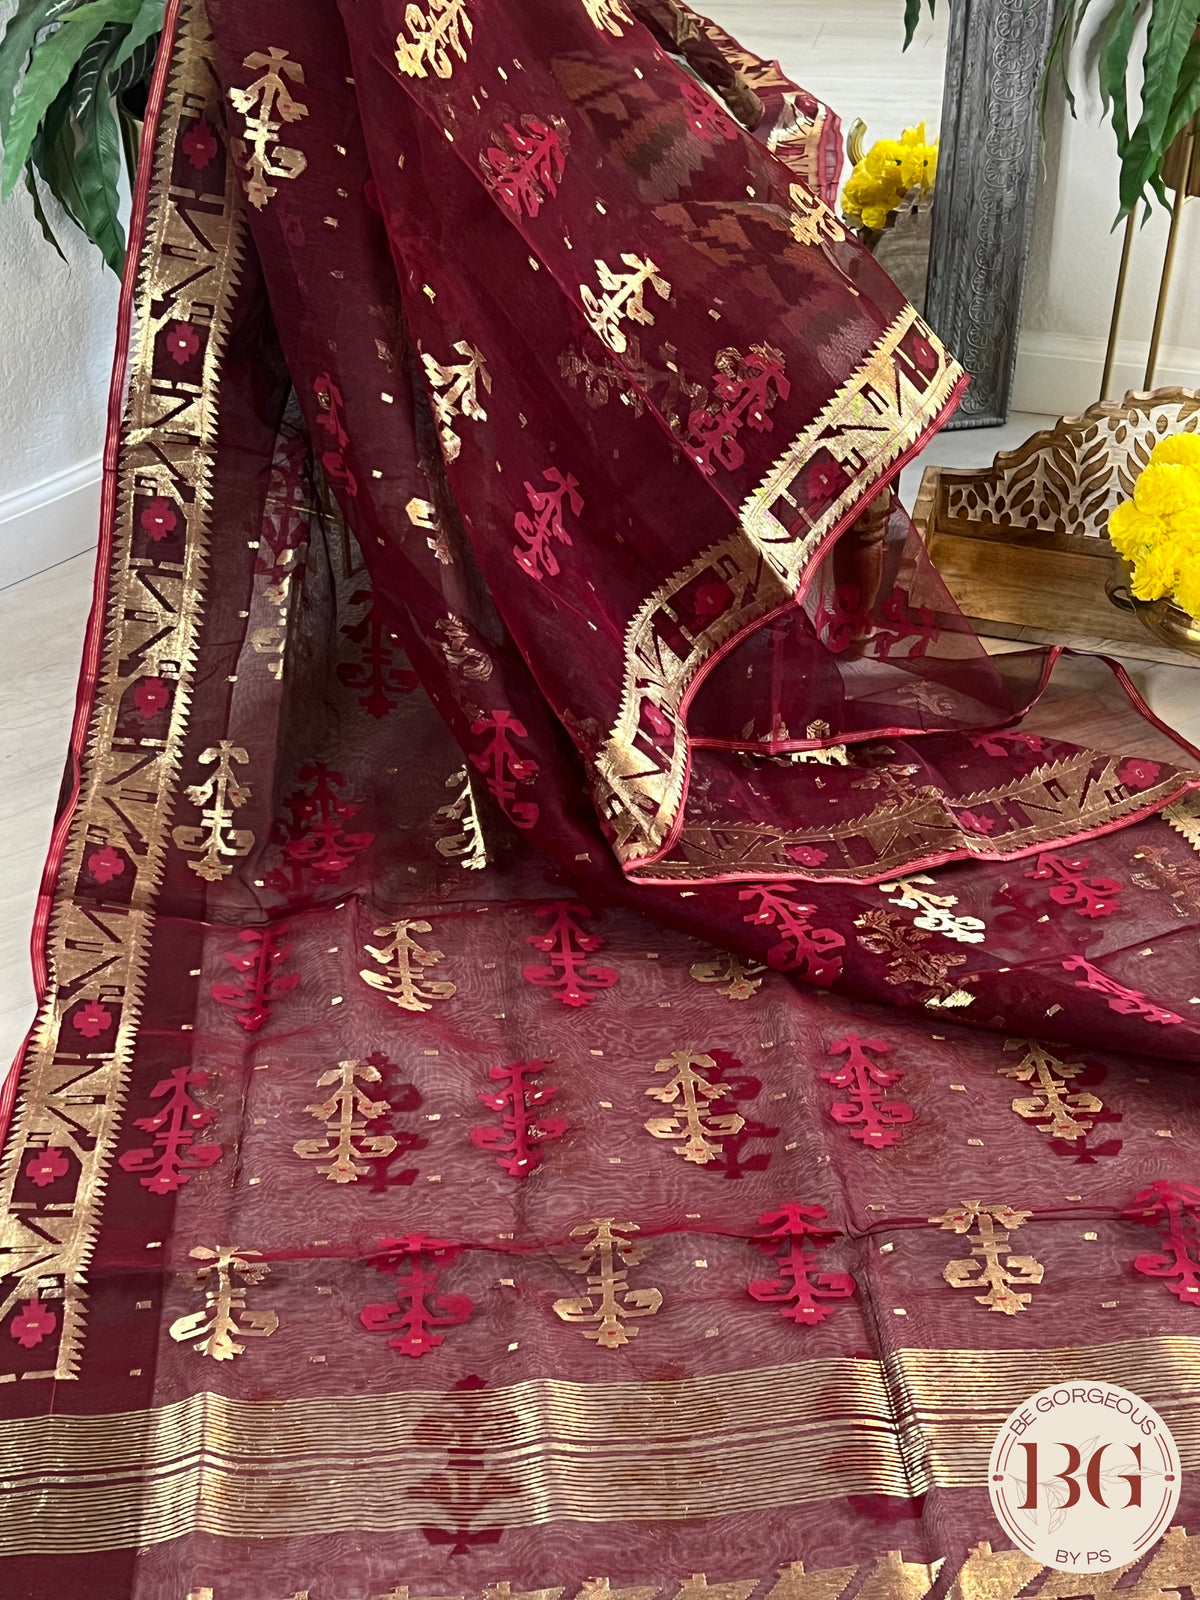 Pure handloom jamdani with zari saree color - maroon